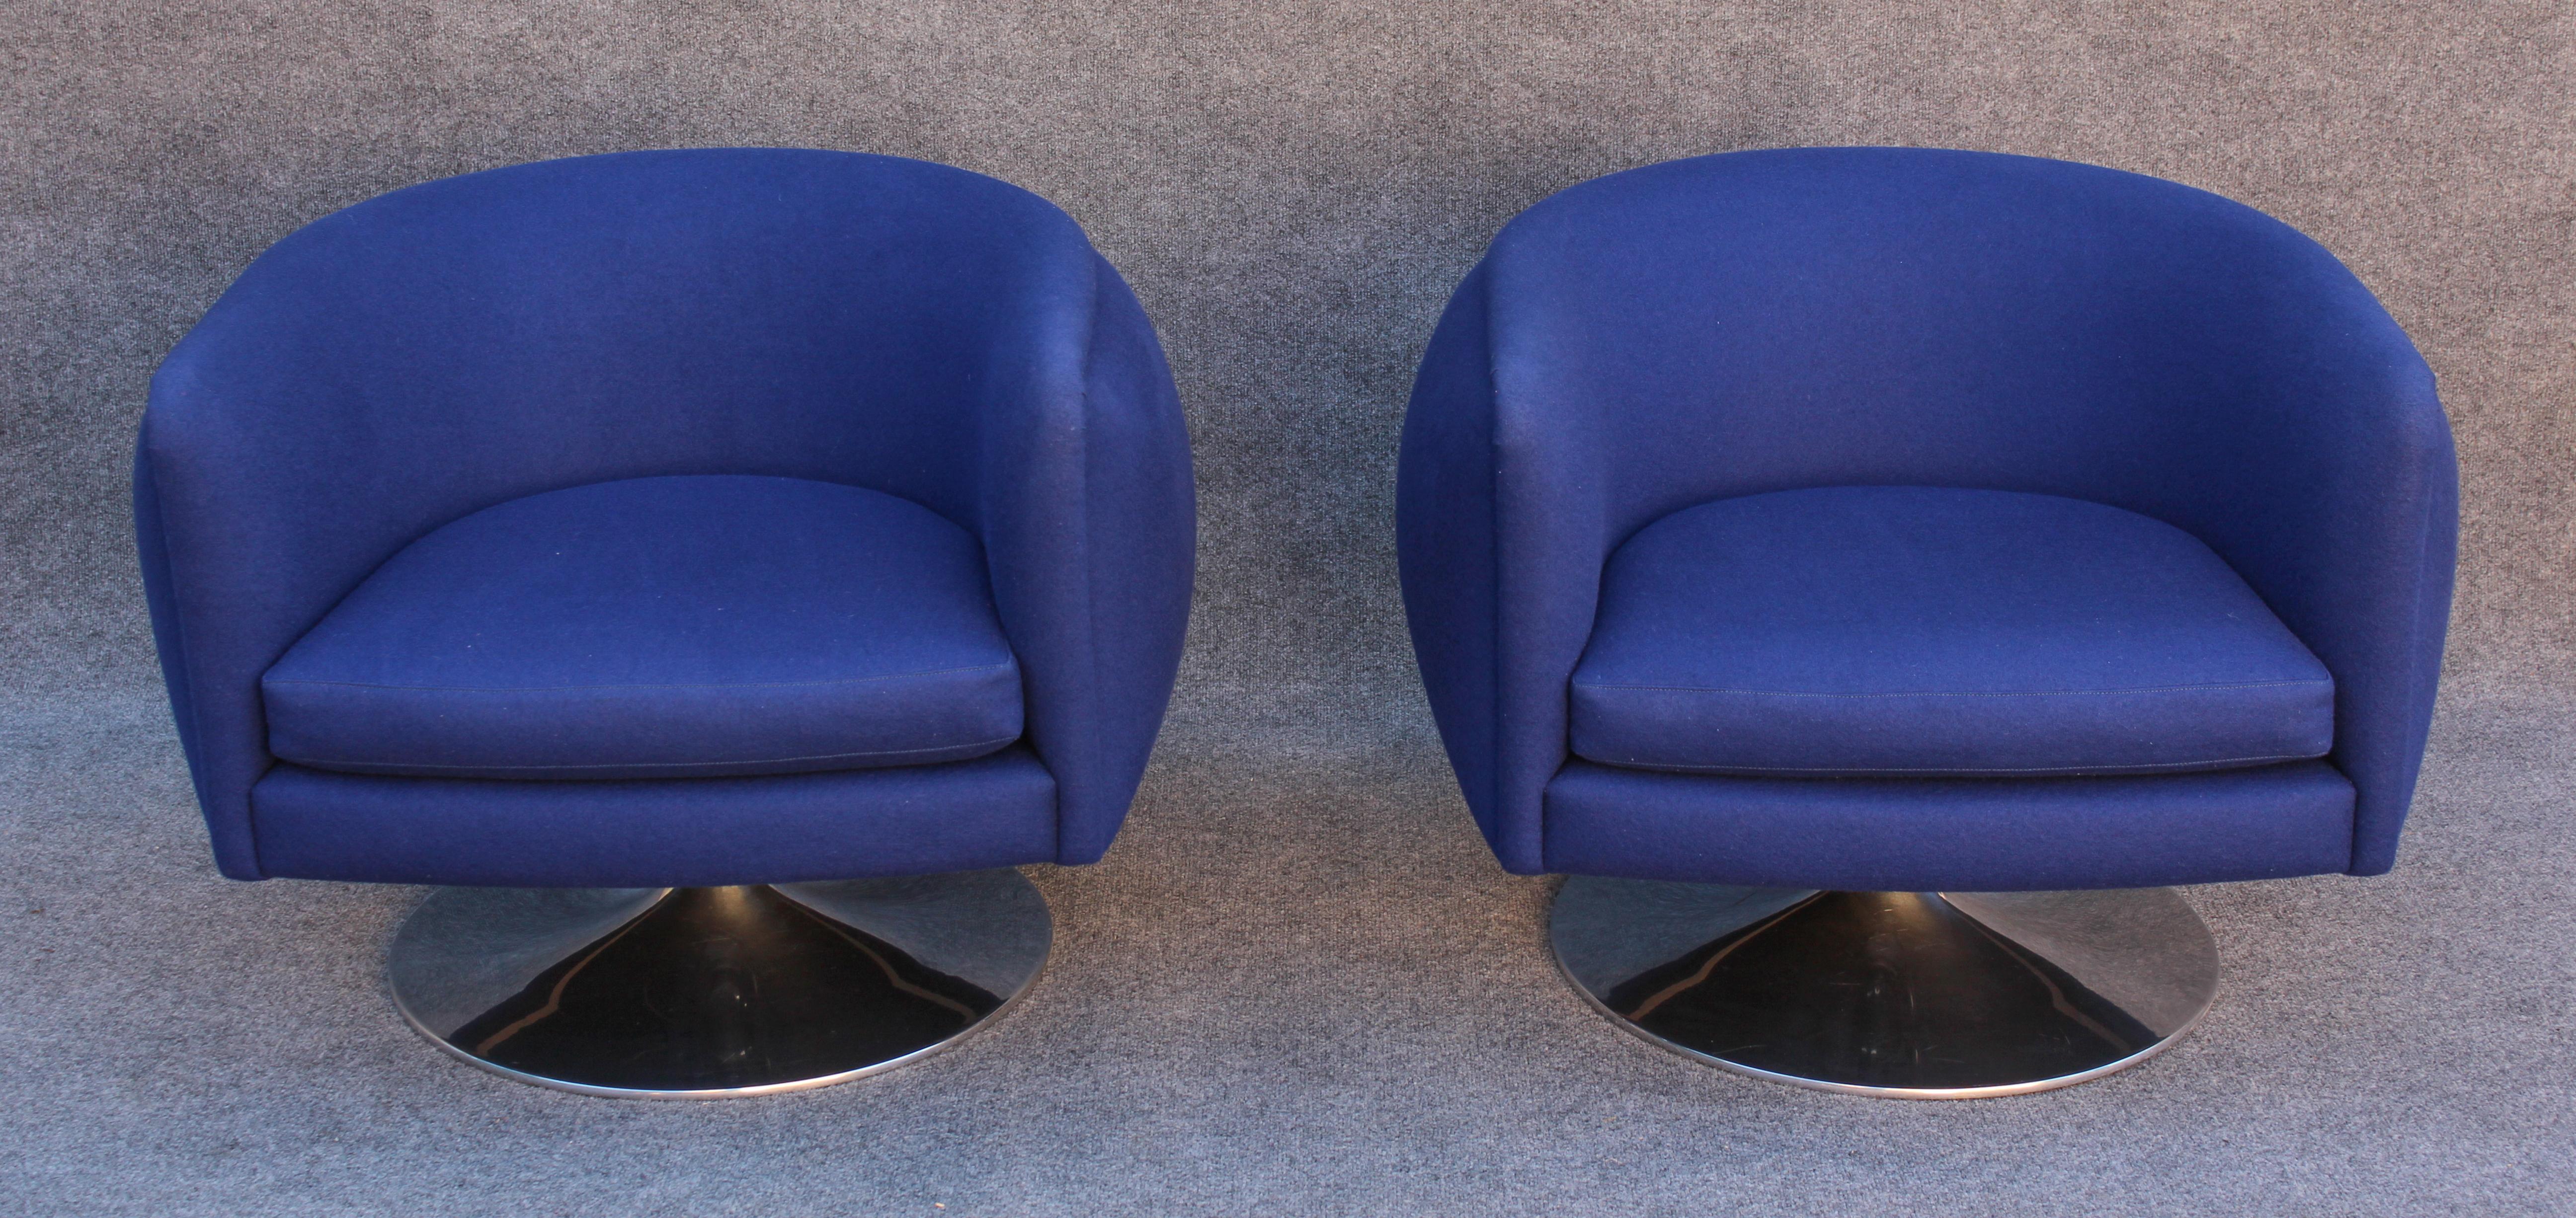 Cette paire de chaises, l'un des designs les plus emblématiques de Joe D'Icone, a été produite en  de Knoll. Cette paire renonce à la fonction 